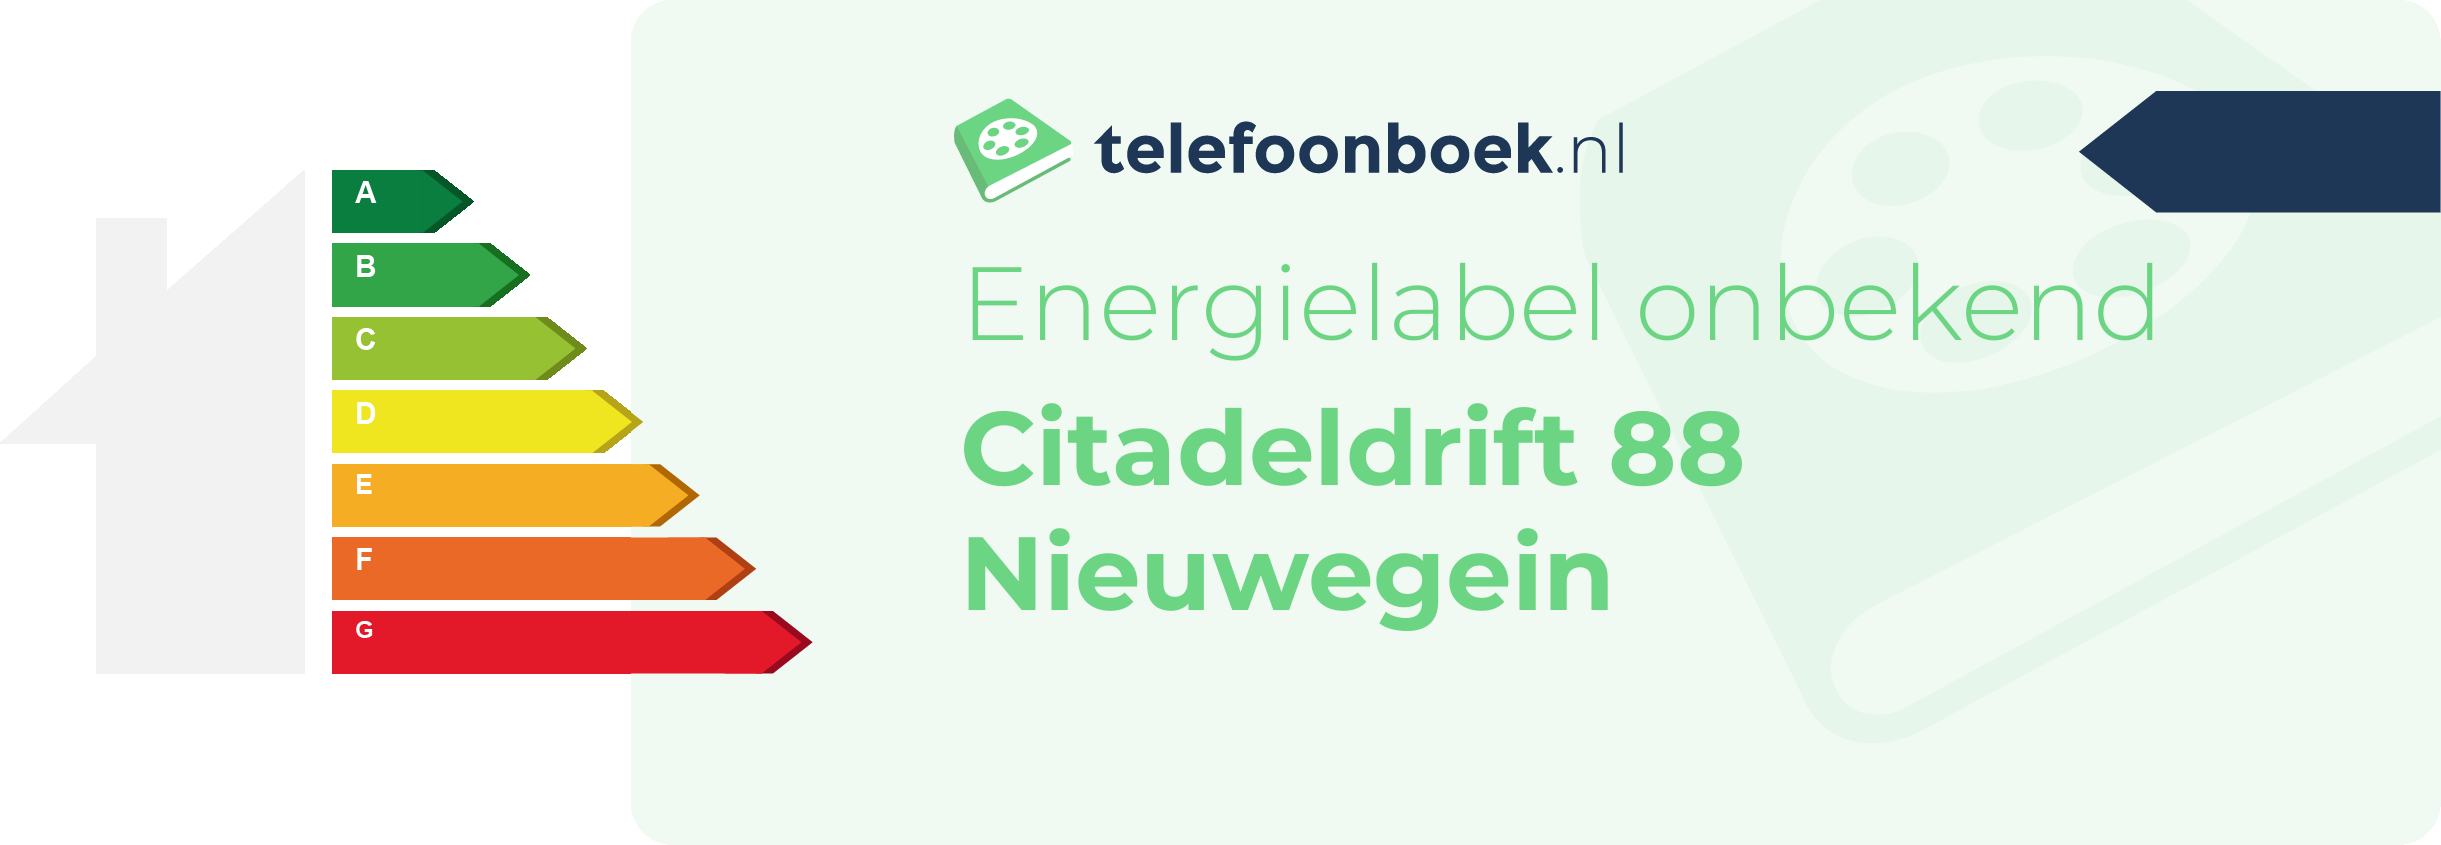 Energielabel Citadeldrift 88 Nieuwegein